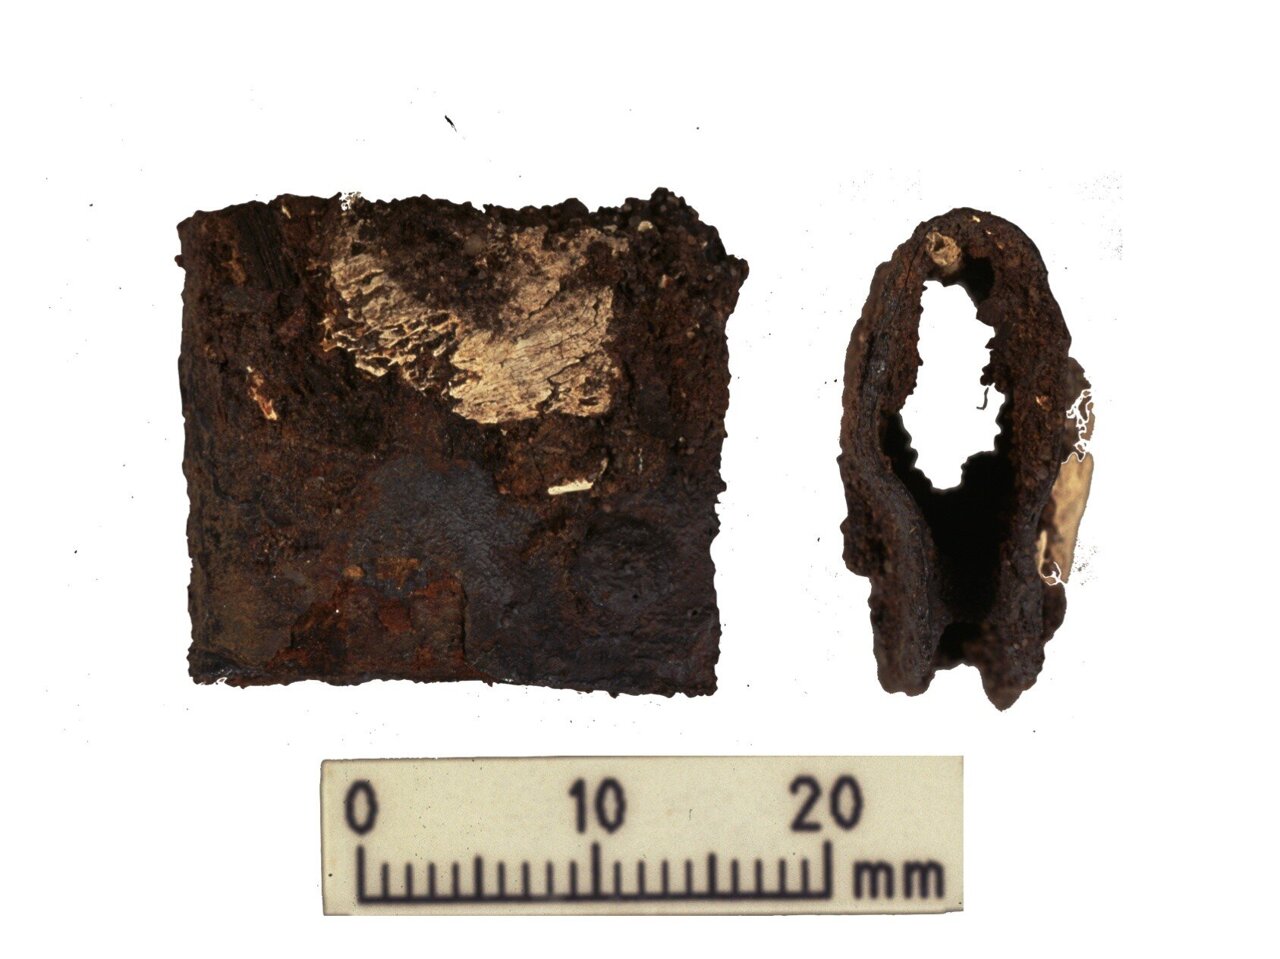 Gesper dari perisai prajurit Viking ditemukan selama penggalian asli pada tahun 1998-2000. Gesper itu ditemukan di kuburan yang sama dengan sisa-sisa manusia dan hewan yang dianalisis selama penelitian terbaru.